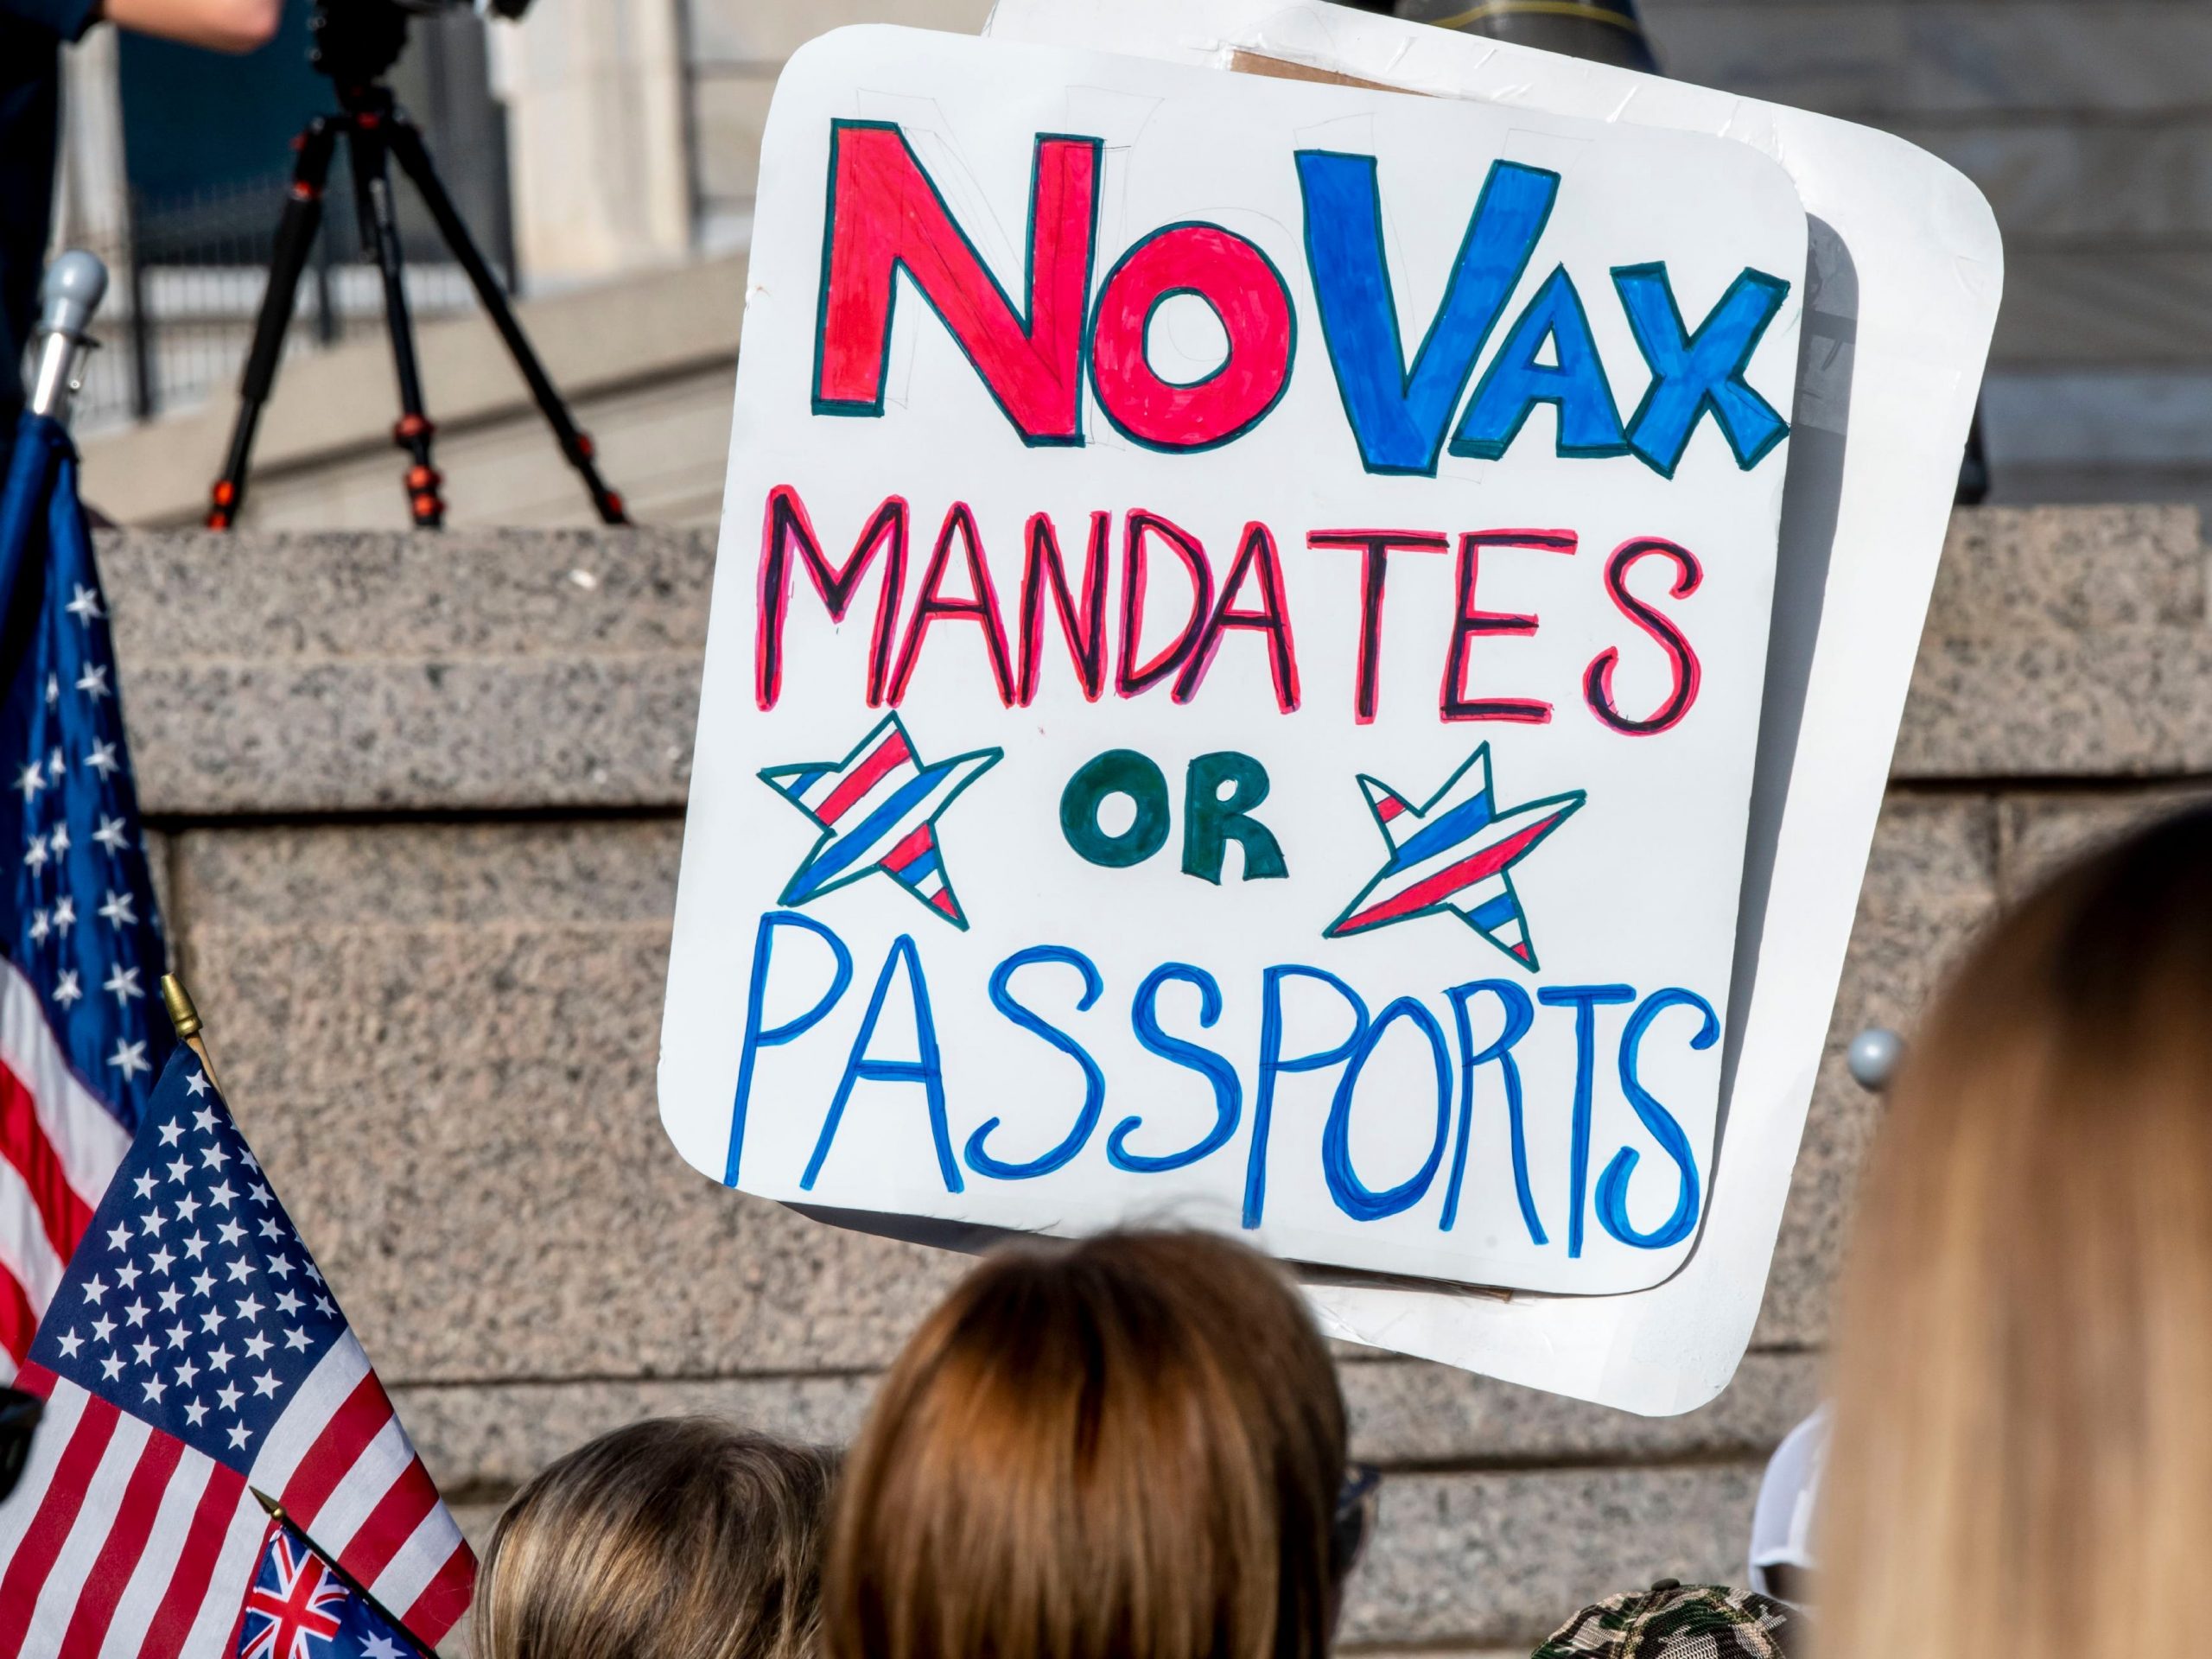 'No Vax Mandates or Passports' sign at rally